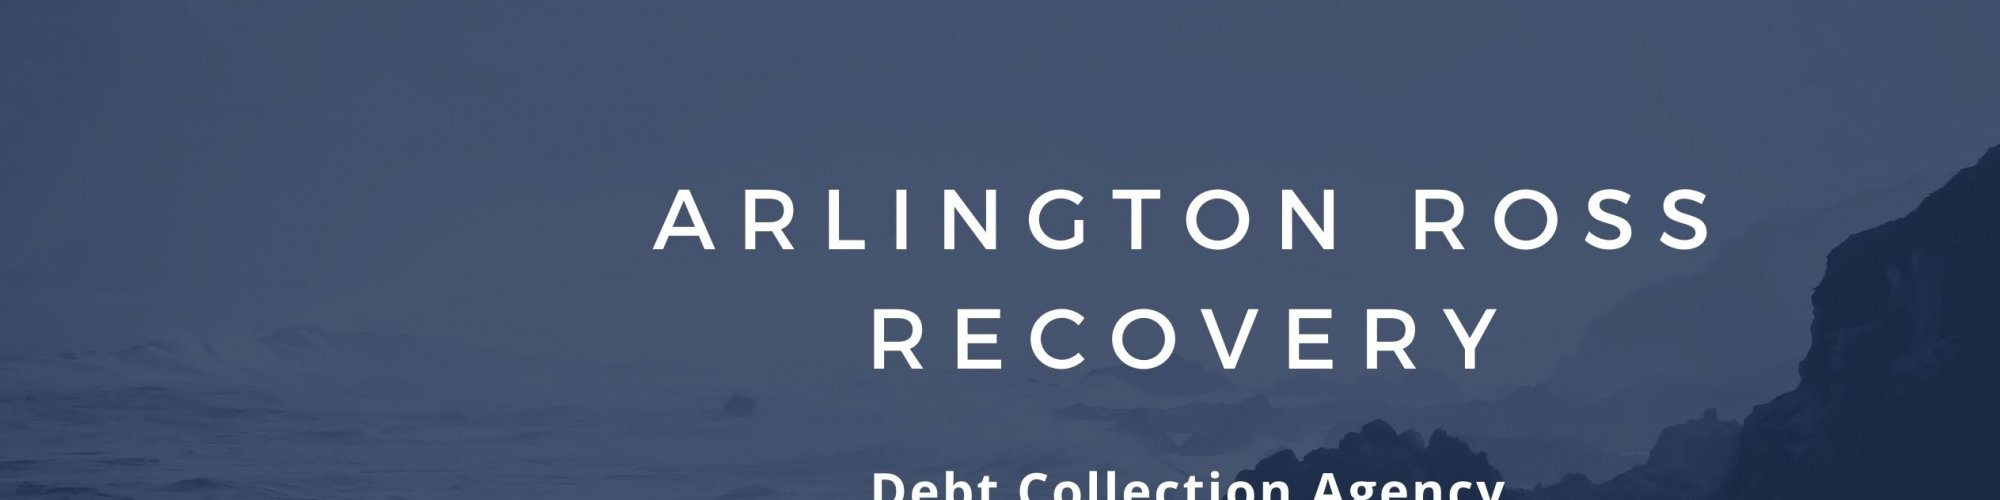 Arlington Ross Recovery